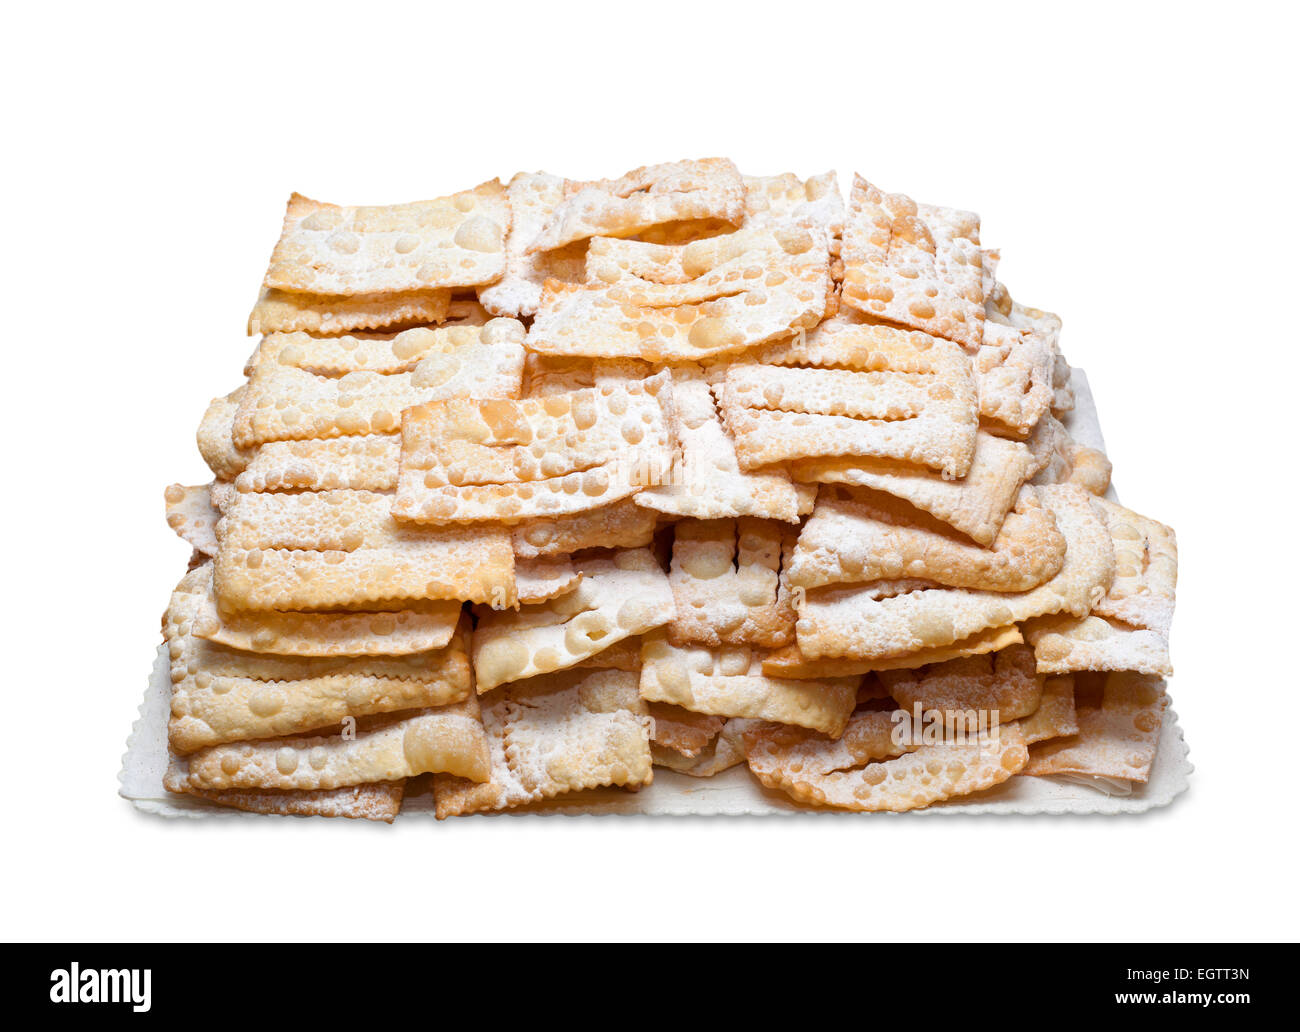 Versuchen Sie Chiacchiere oder Frappe, italienische frittierte Gebäck auf weißem Hintergrund. Stockfoto